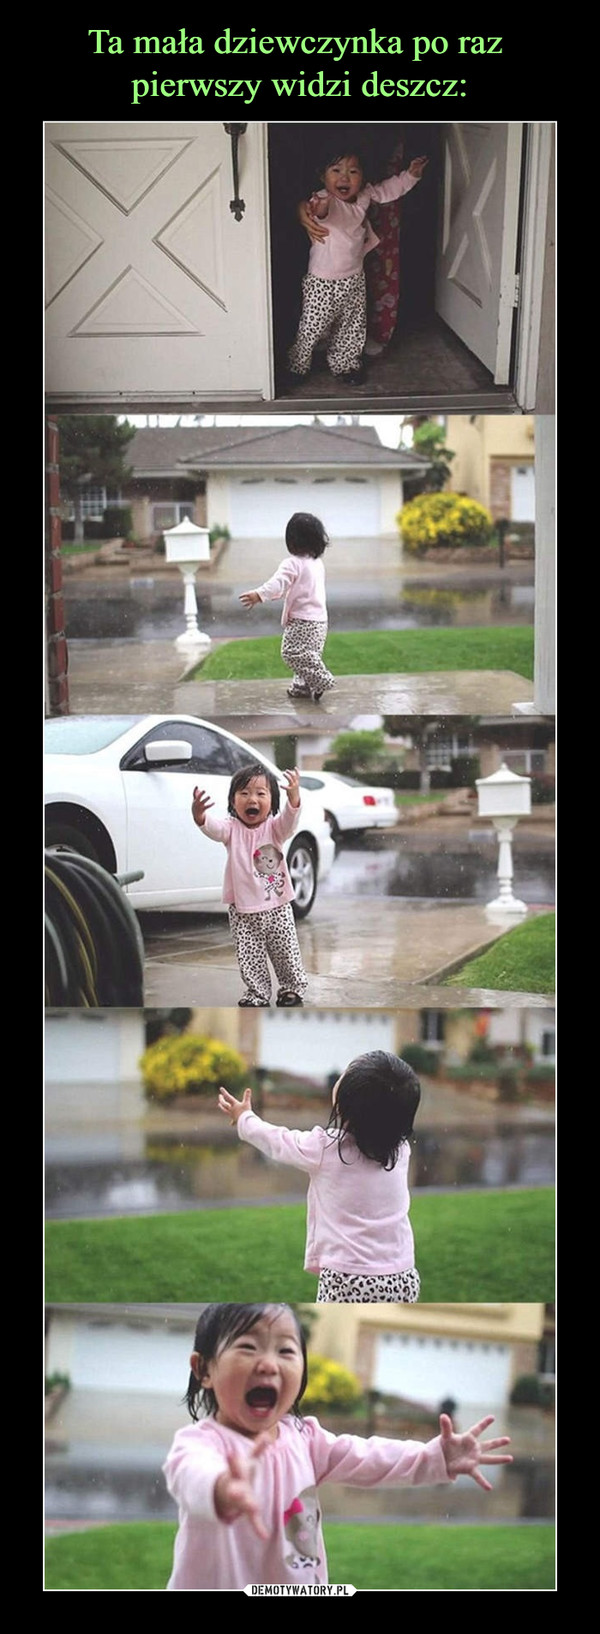 Ta mała dziewczynka po raz 
pierwszy widzi deszcz: